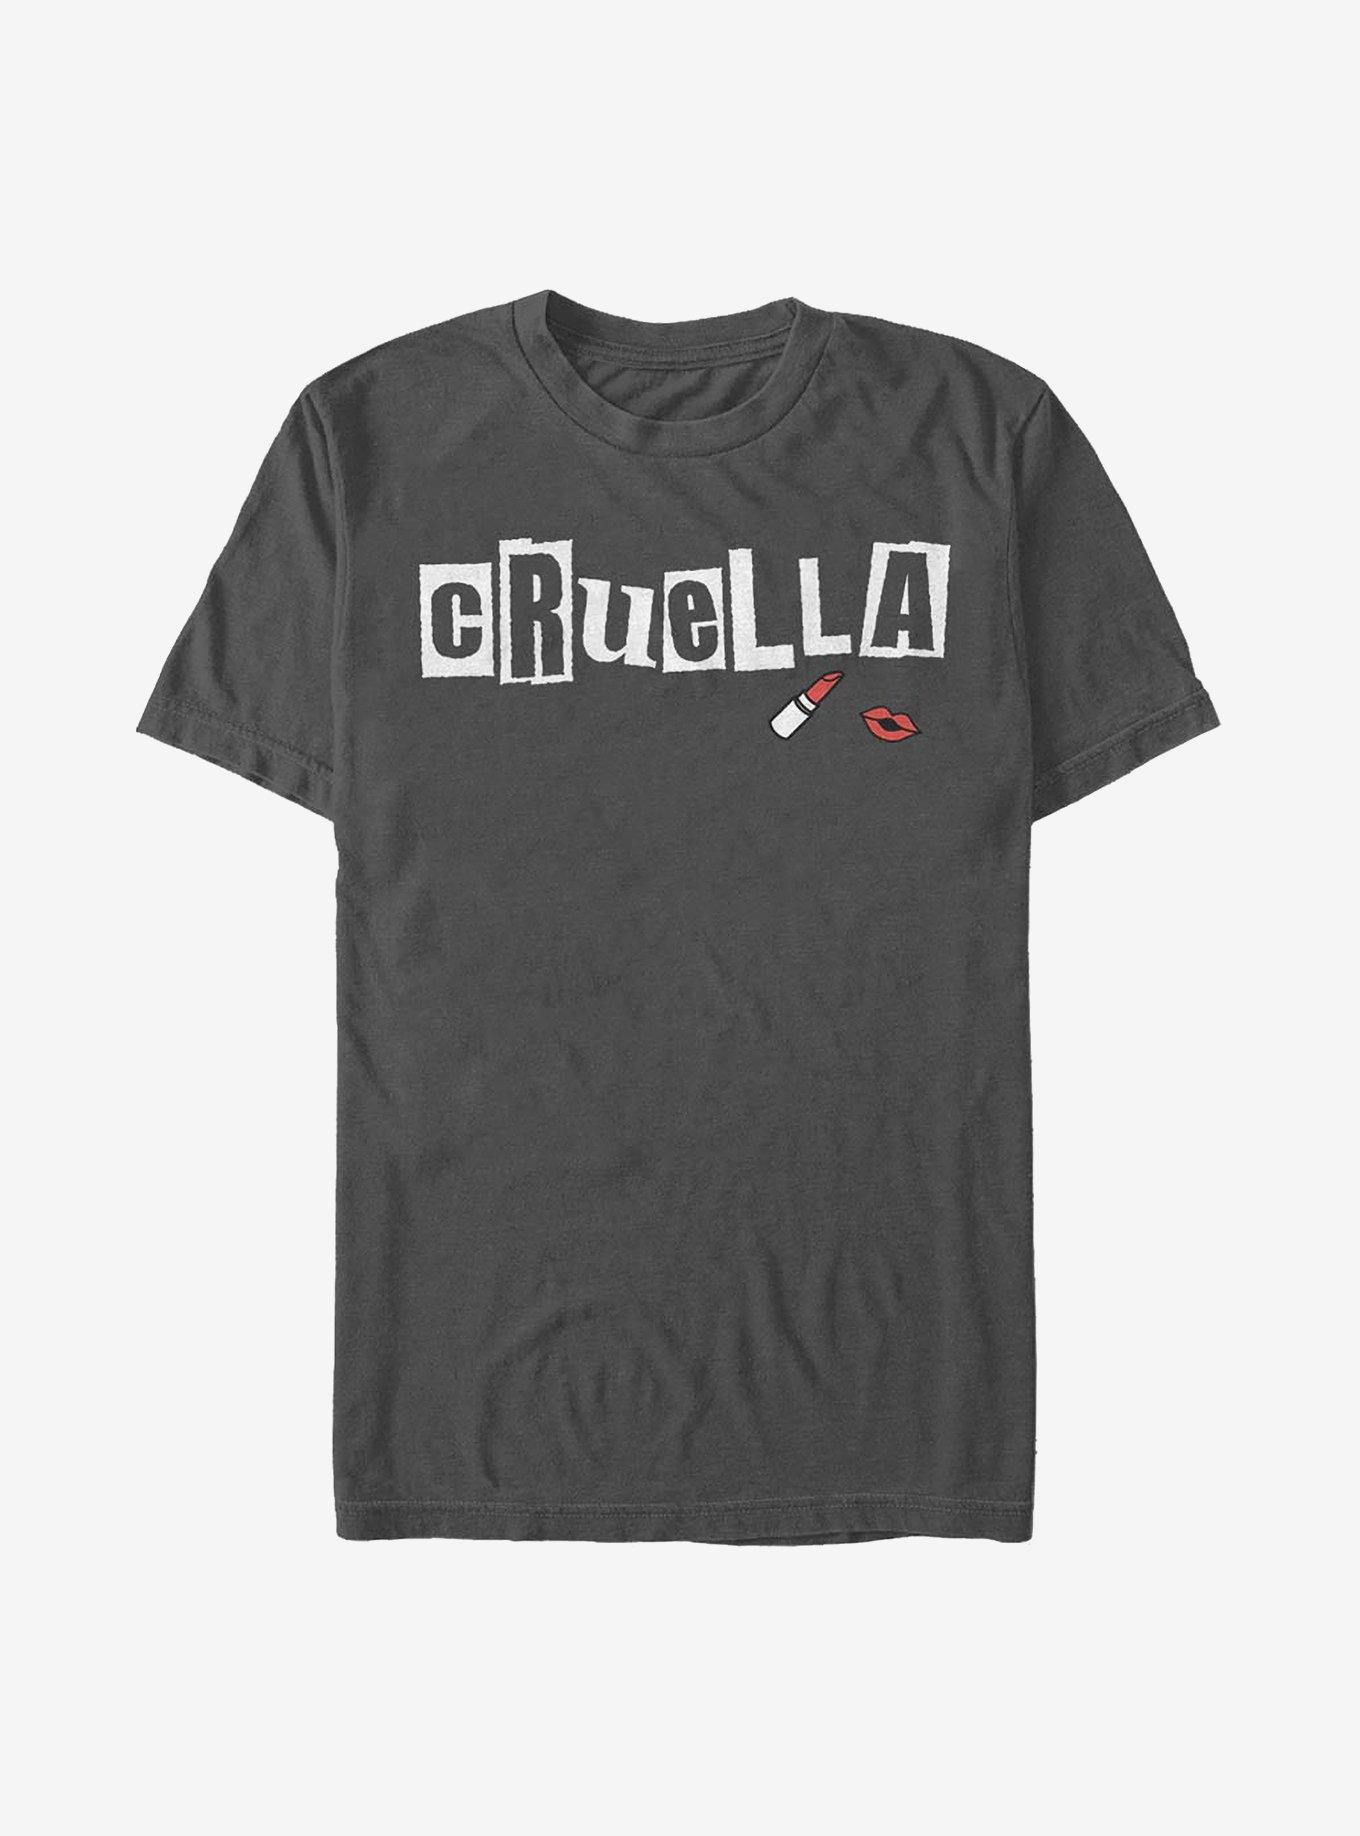 Disney Cruella Name Cut Out Letters T-Shirt, CHARCOAL, hi-res